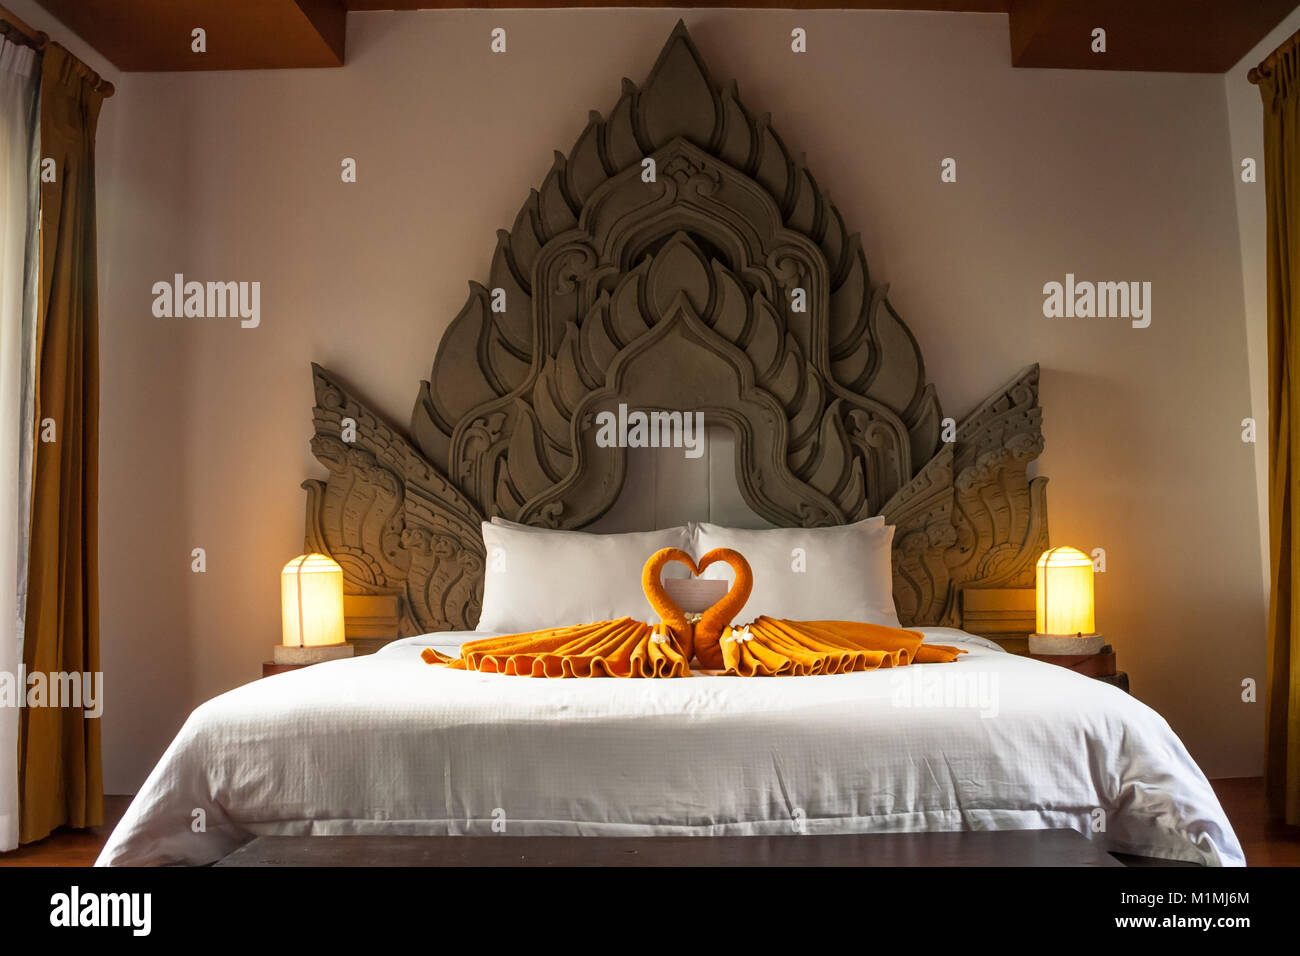 Ein großes Bett mit einem typisch thailändischen Stil verziert Kopfteil und auf dem Bett sind zwei gefalteten Handtuch Schwäne. Stockfoto